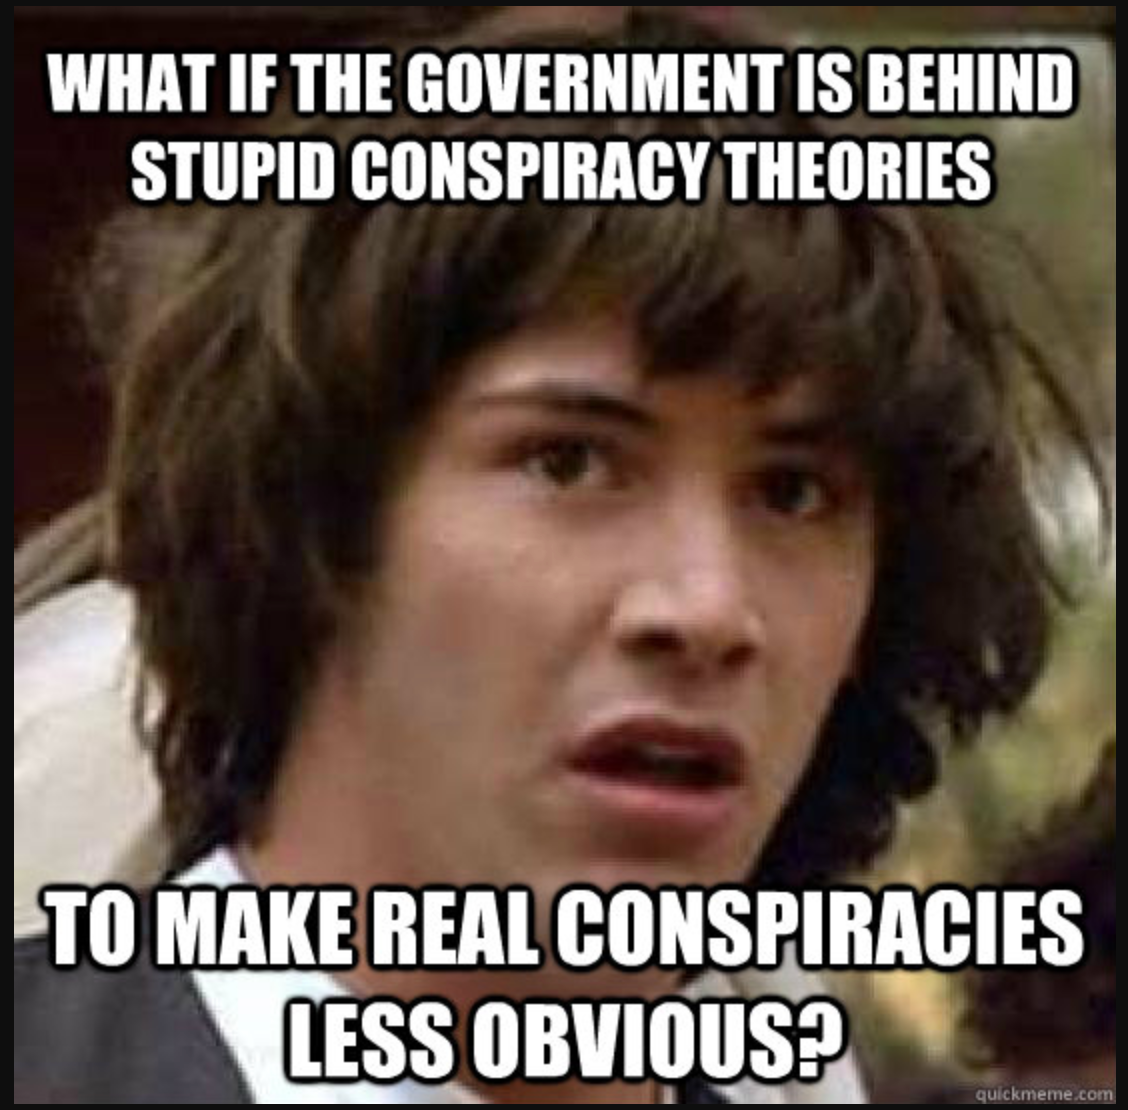 How conspiracy theories spread | Mediawijs